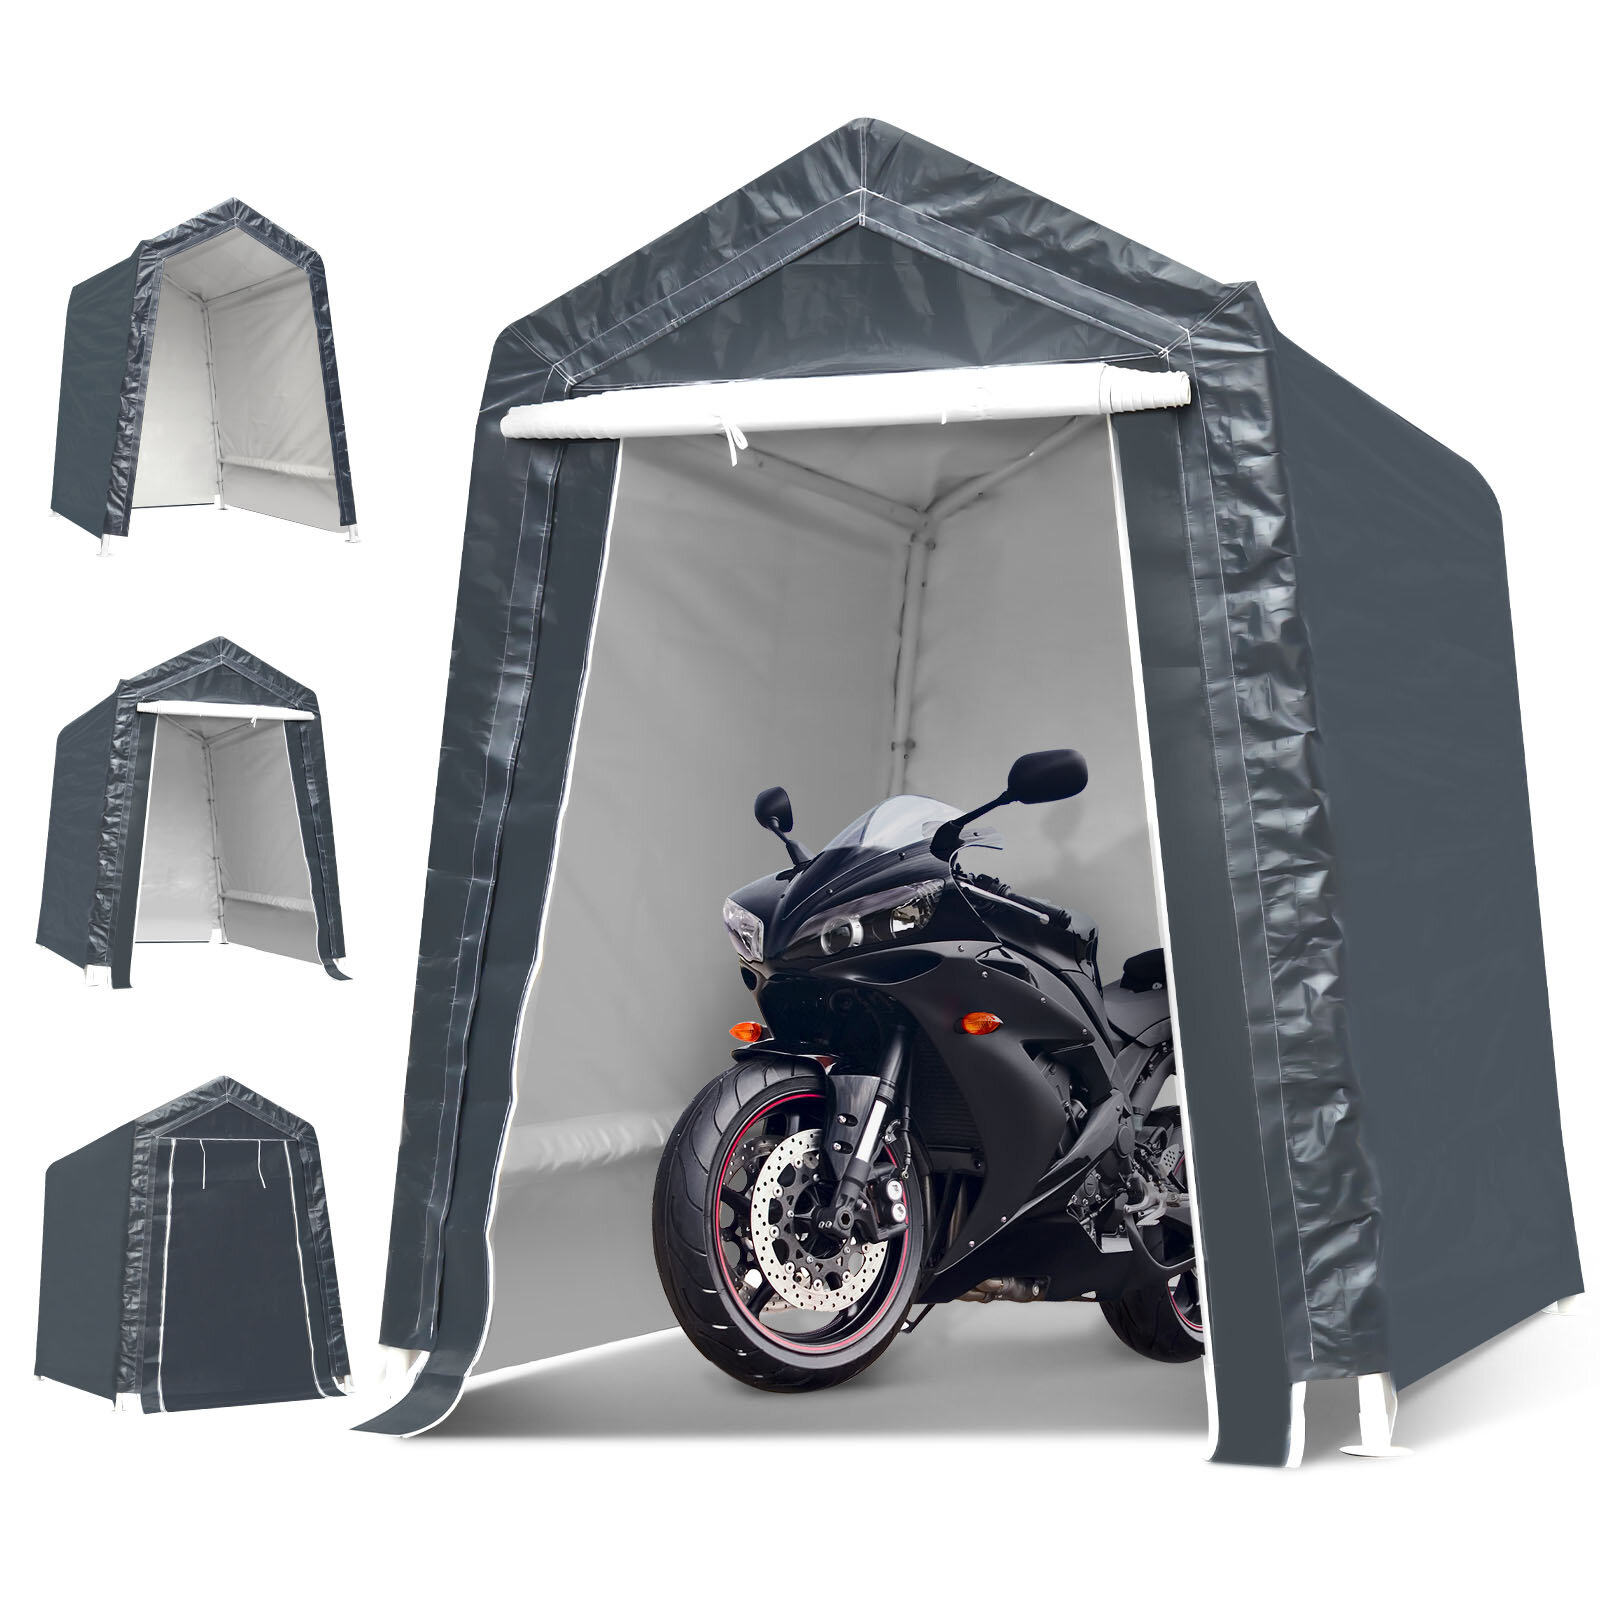 6x8x7 Ft motorkerékpár autóbeálló hordozható UV vízálló burkolat tárolóhelyek kemping sátor baldachin menedékhely kerti terasz